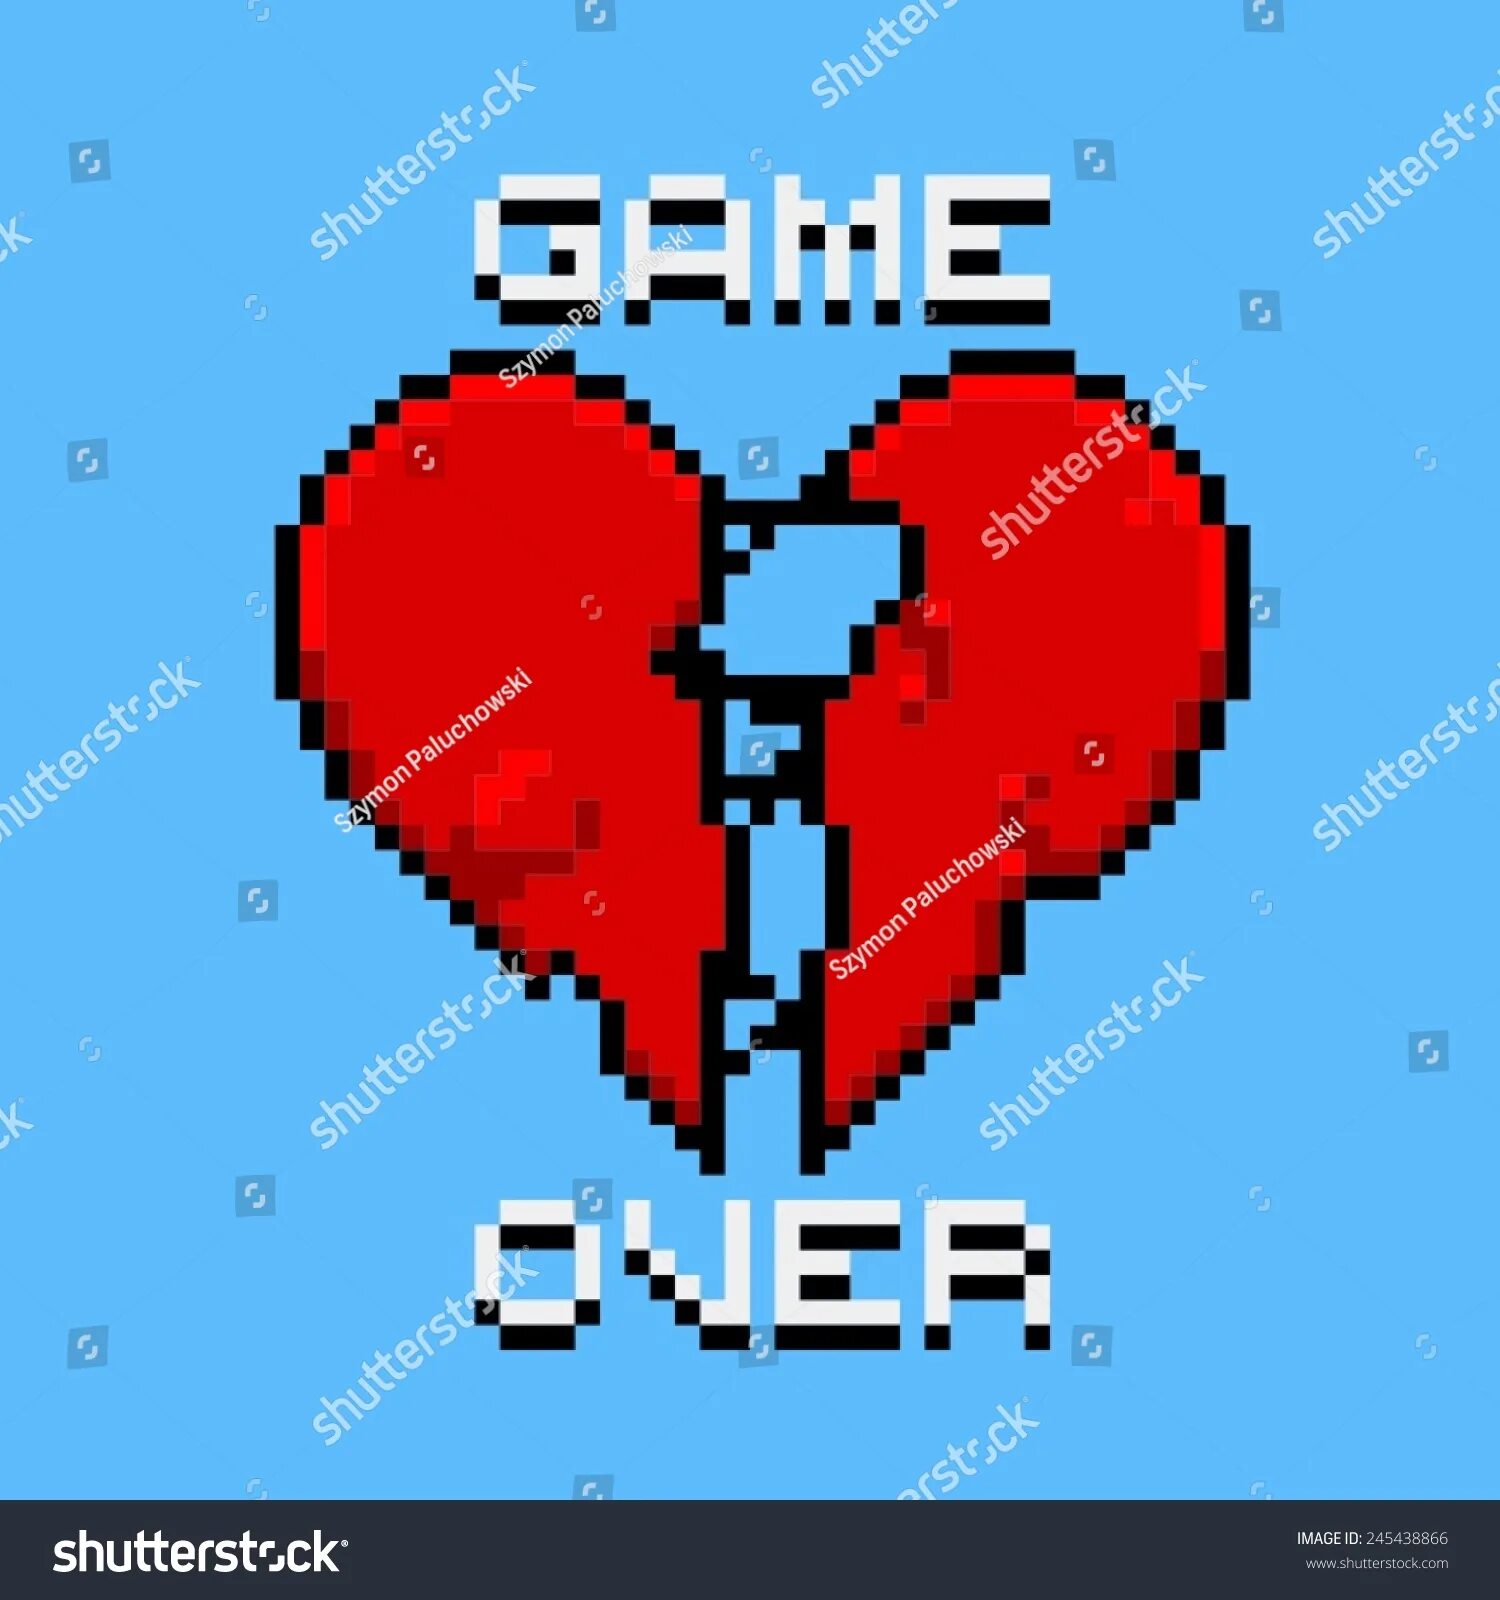 Овер лове. Game over Love. Game over сердце. Гейм овер картинки любовь. Game over Pixel Art.